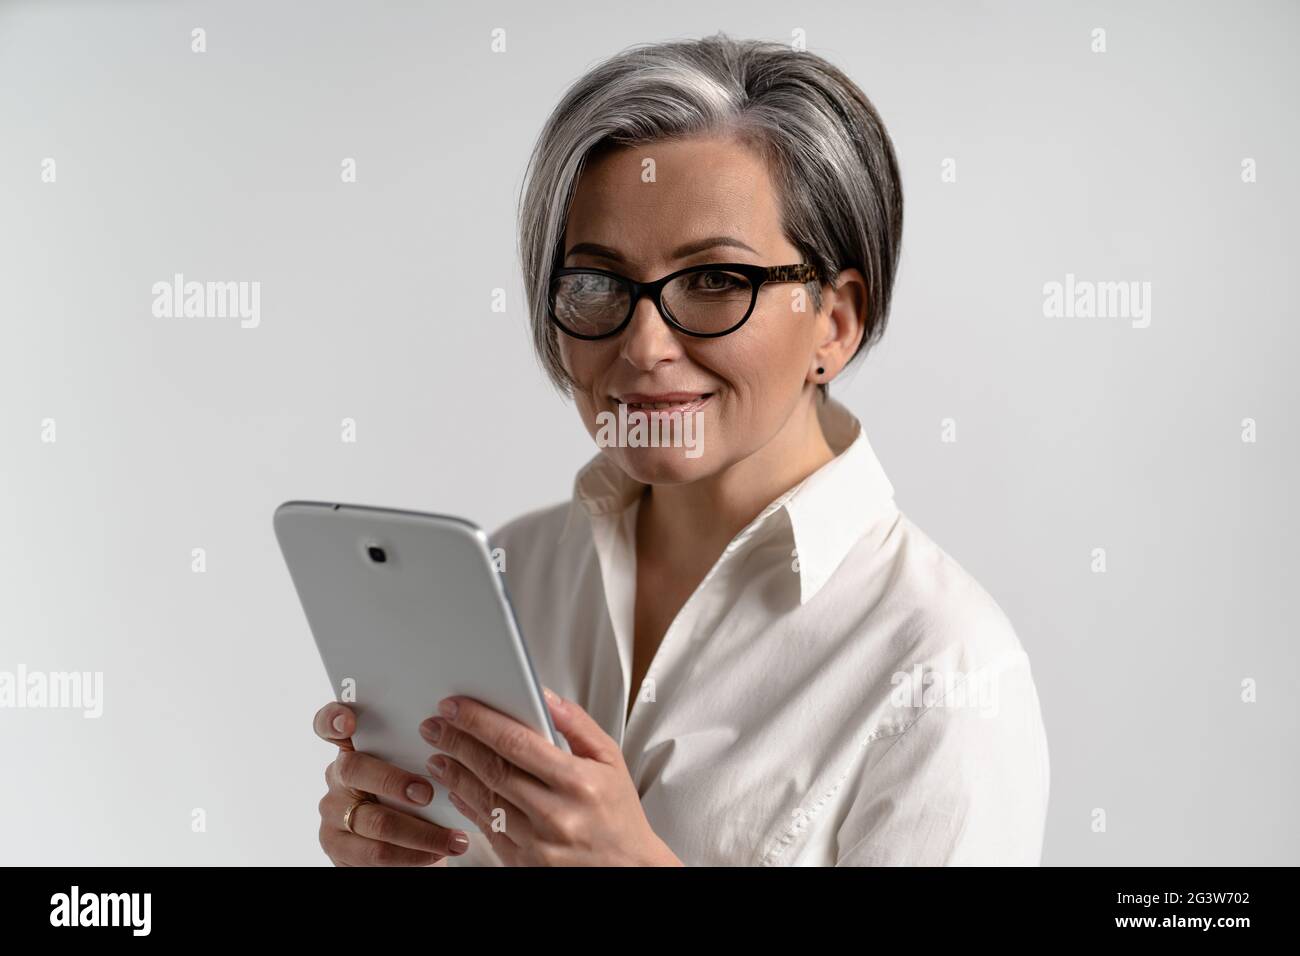 Portrait d'une femme mûre aux cheveux gris en chemise blanche et lunettes à l'aide d'une tablette numérique. L'utilisation de la technologie par les personnes âgées Banque D'Images